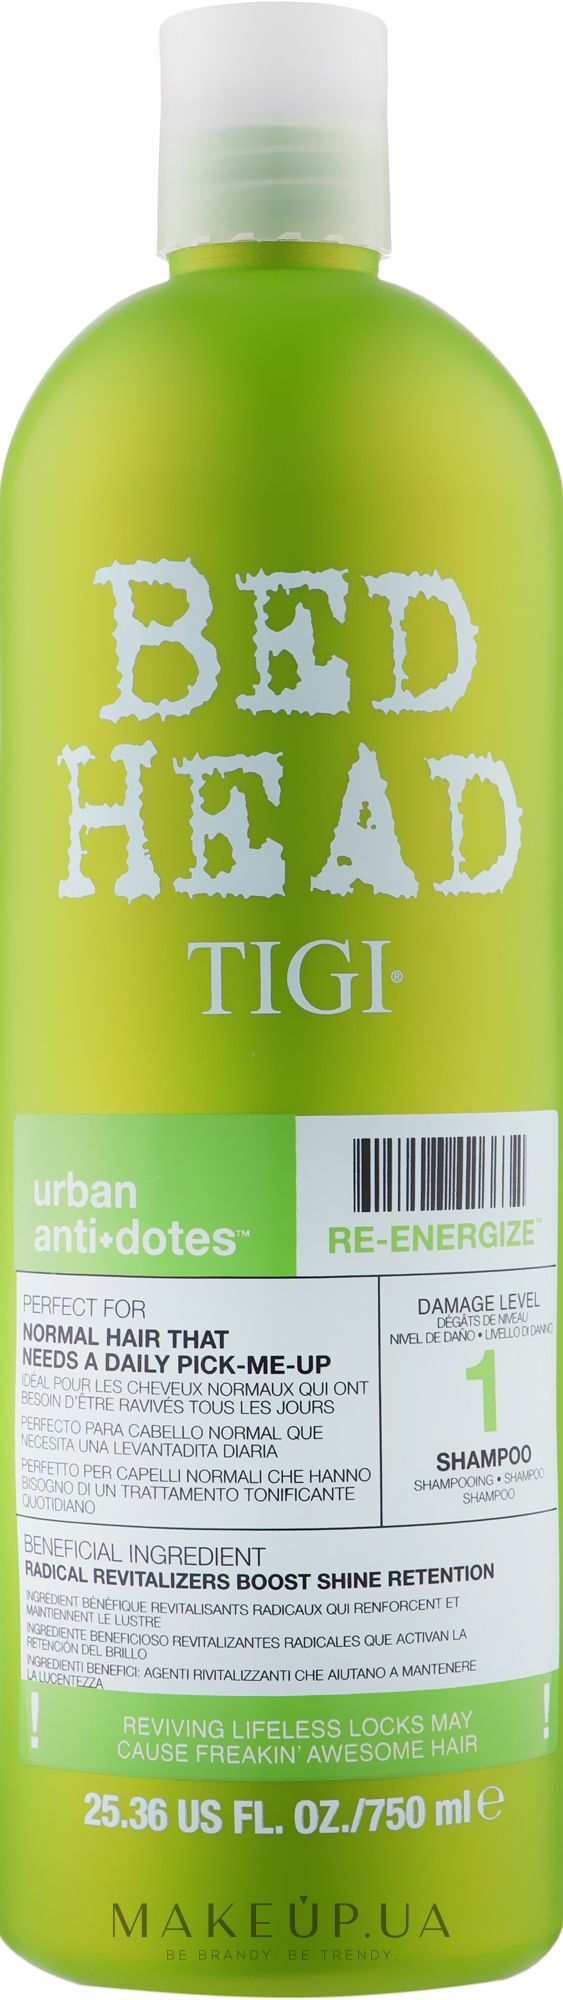 Укрепляющий шампунь для нормальных волос - Tigi Bed Head Urban Antidotes Re-energize Shampoo — фото 750ml